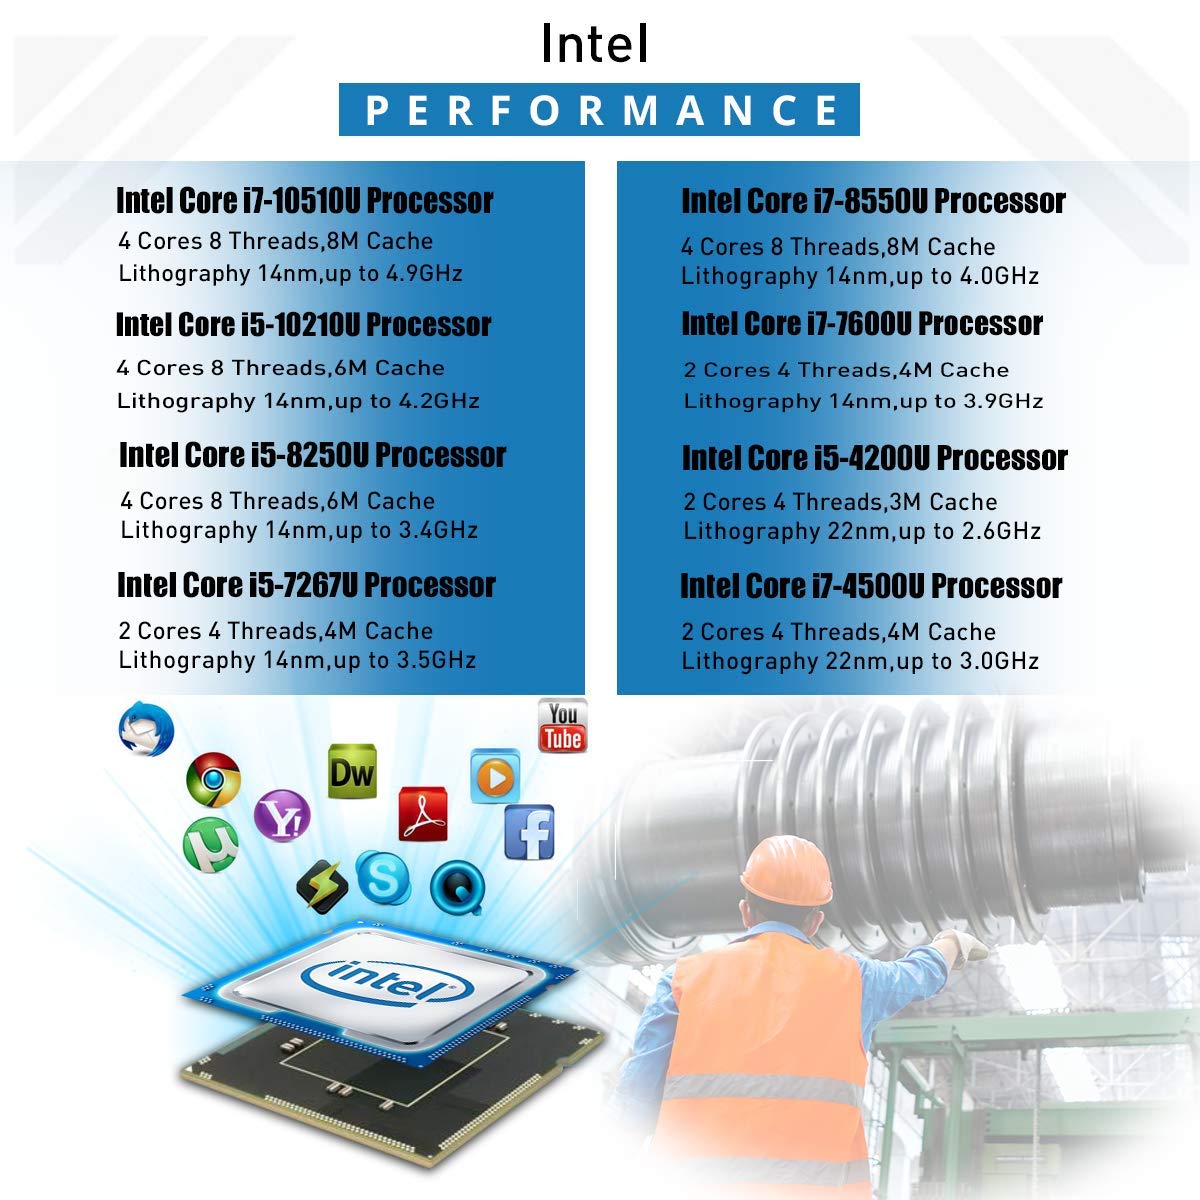 HISTTON Fanless Industrial Mini PC Intel Core i7-10510U, 32GB RAM 512GB SSD, Mini Desktop PC Windows 10, HDMI & VGA RS485/232 COM GPIO Mini Computer, LPT, WiFi, USB 3.0